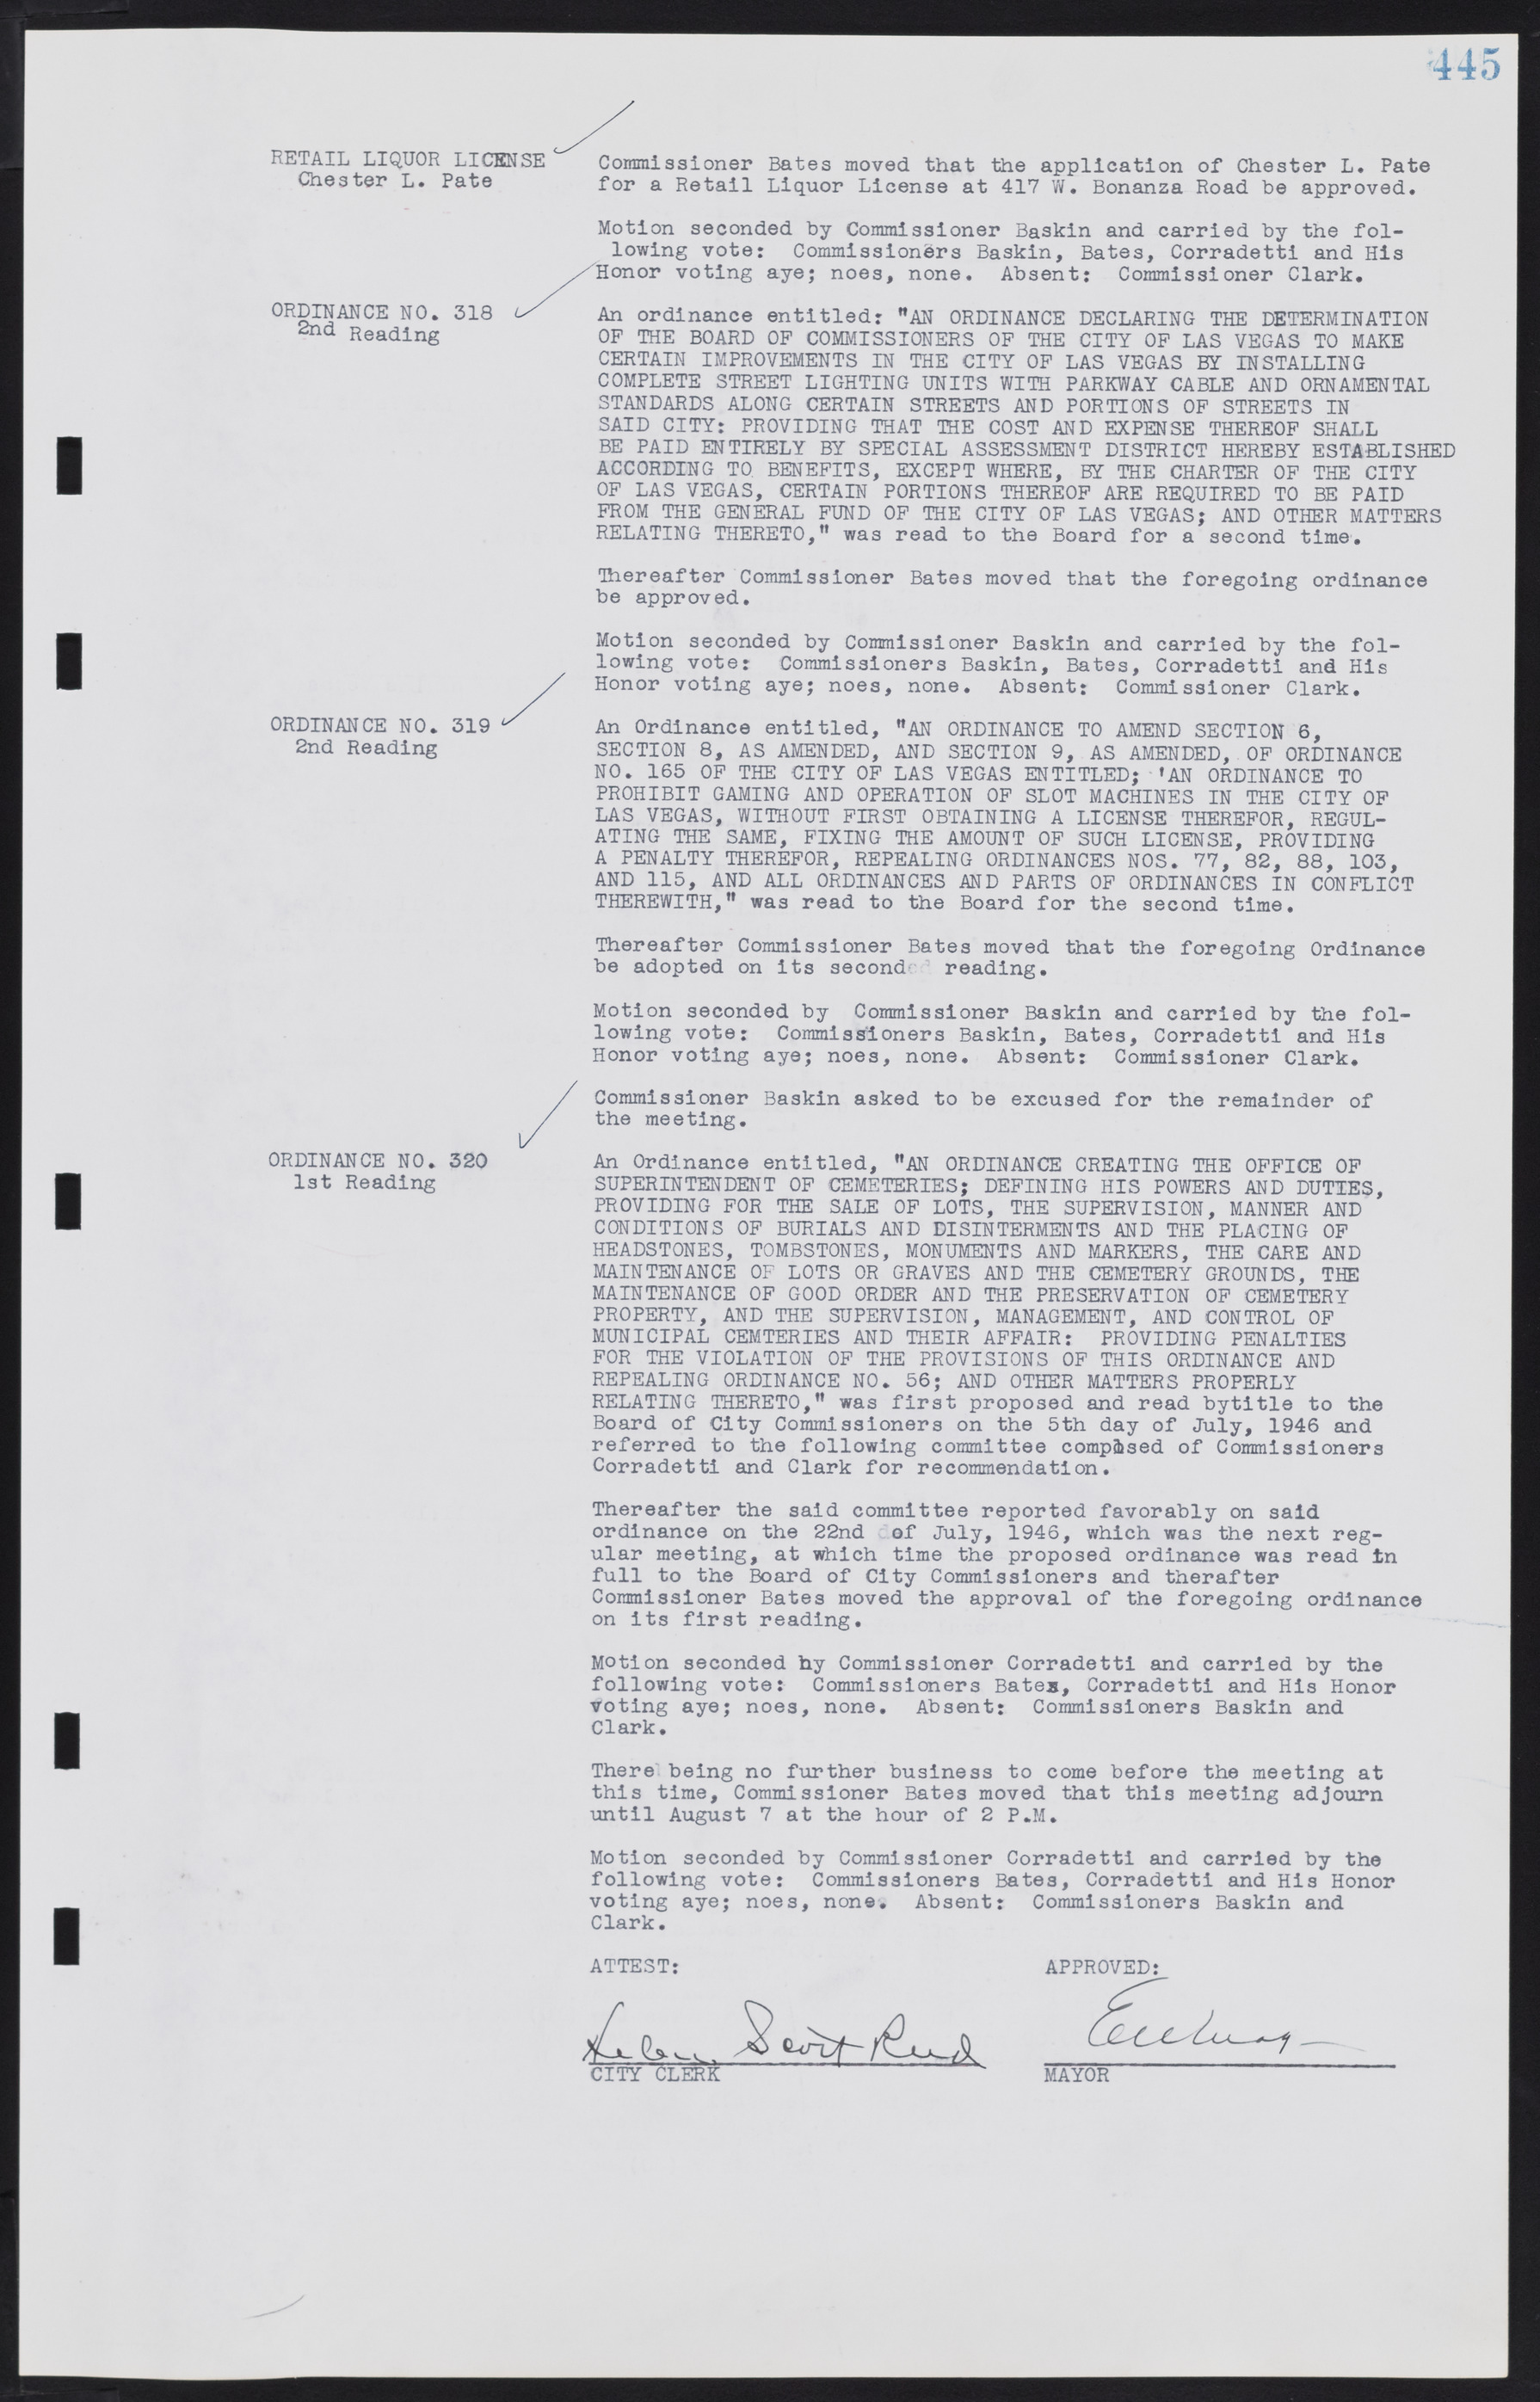 Las Vegas City Commission Minutes, August 11, 1942 to December 30, 1946, lvc000005-476